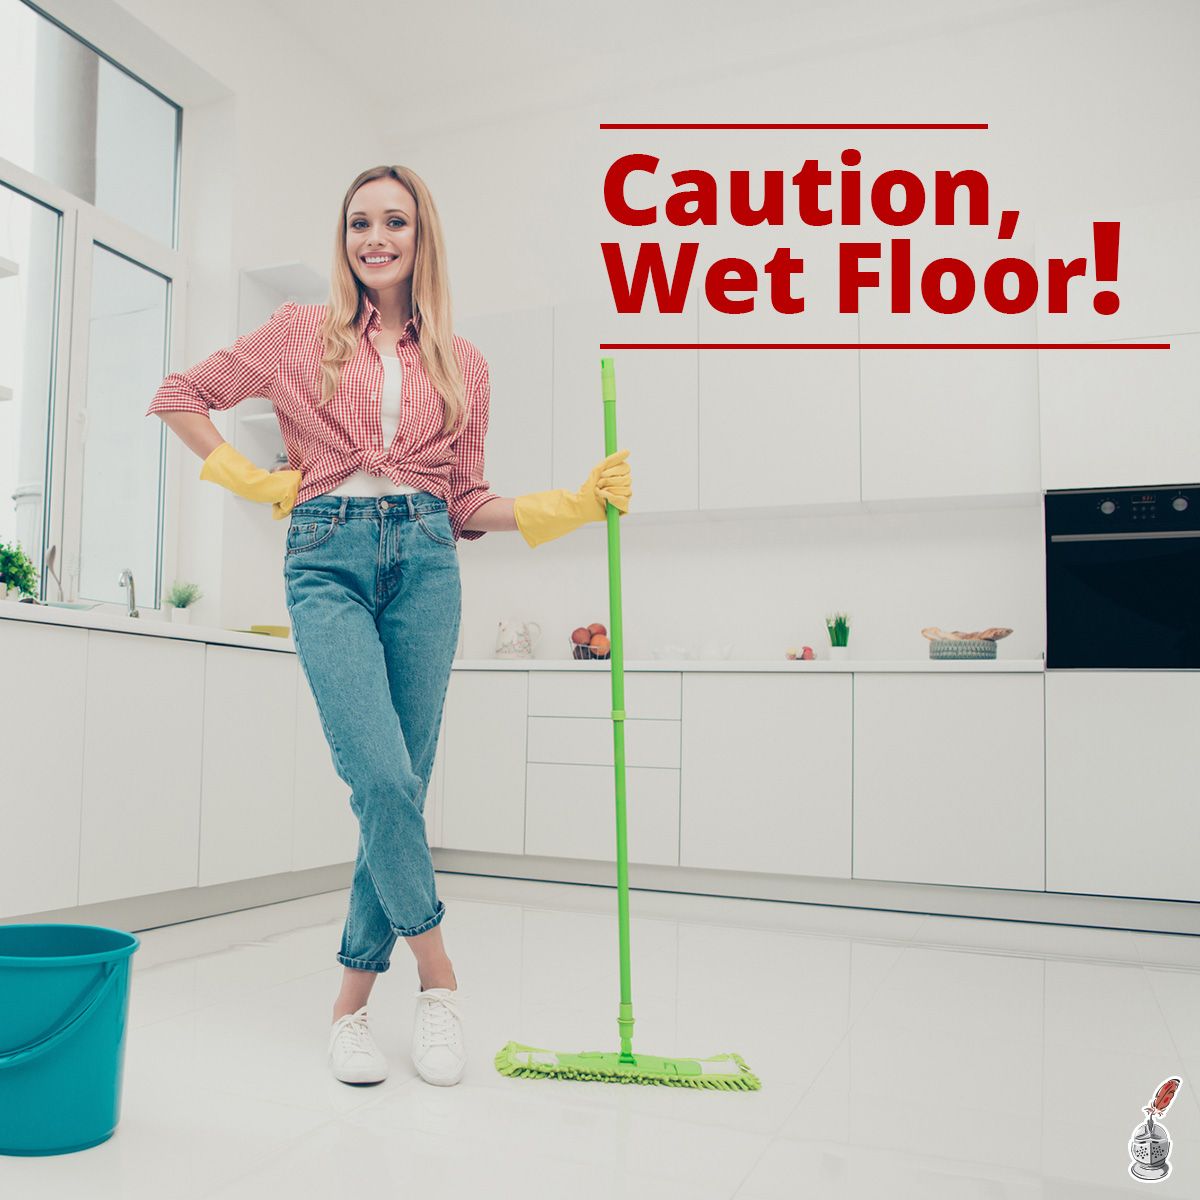 Caution, Wet Floor!